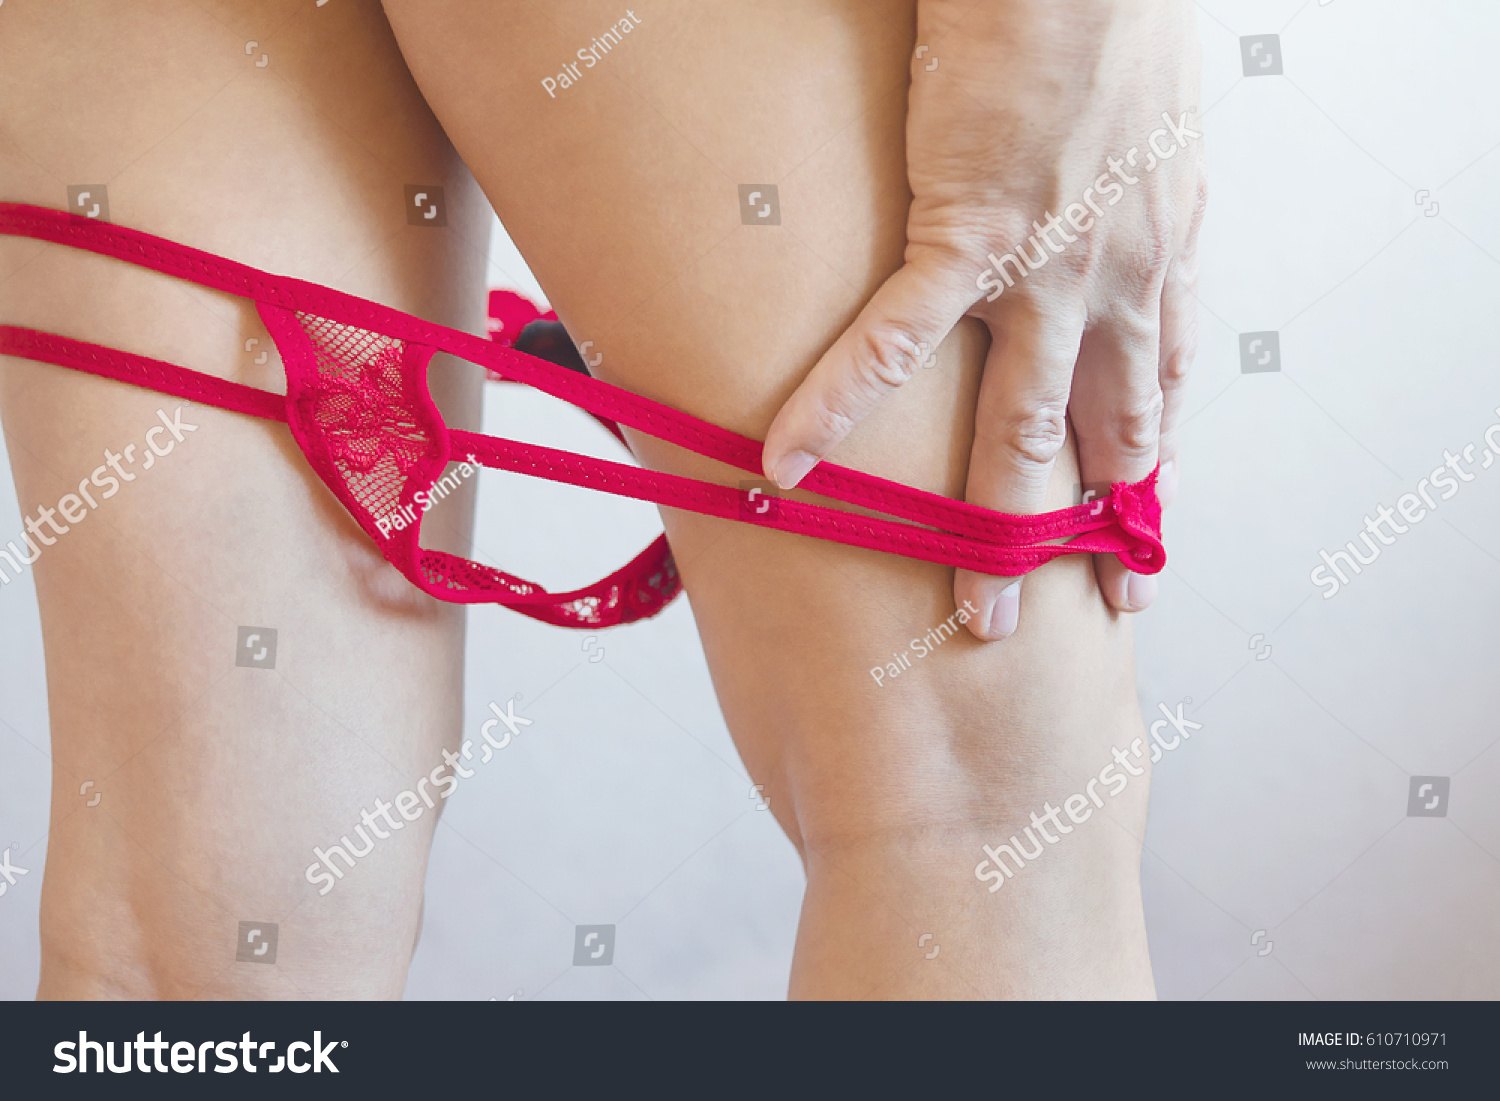 Teen Removing Panties